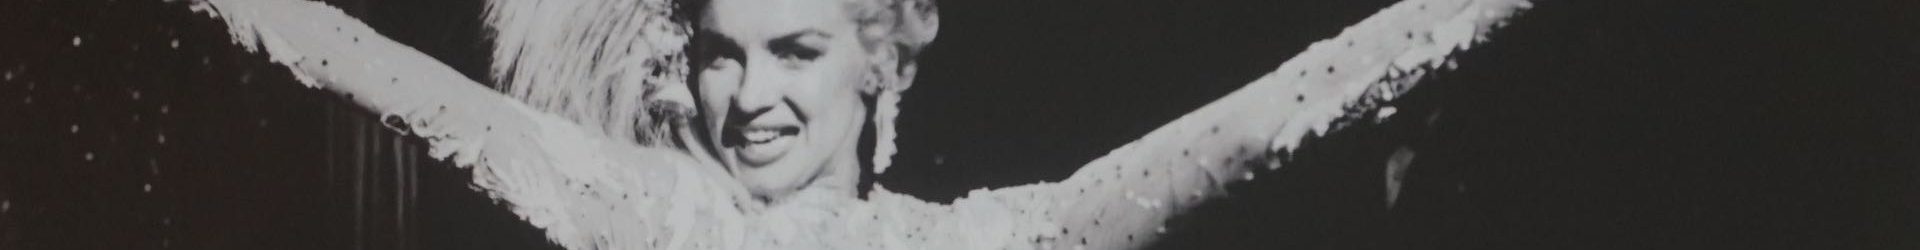 Marilyn dietro la maschera – da “Il Tirreno”